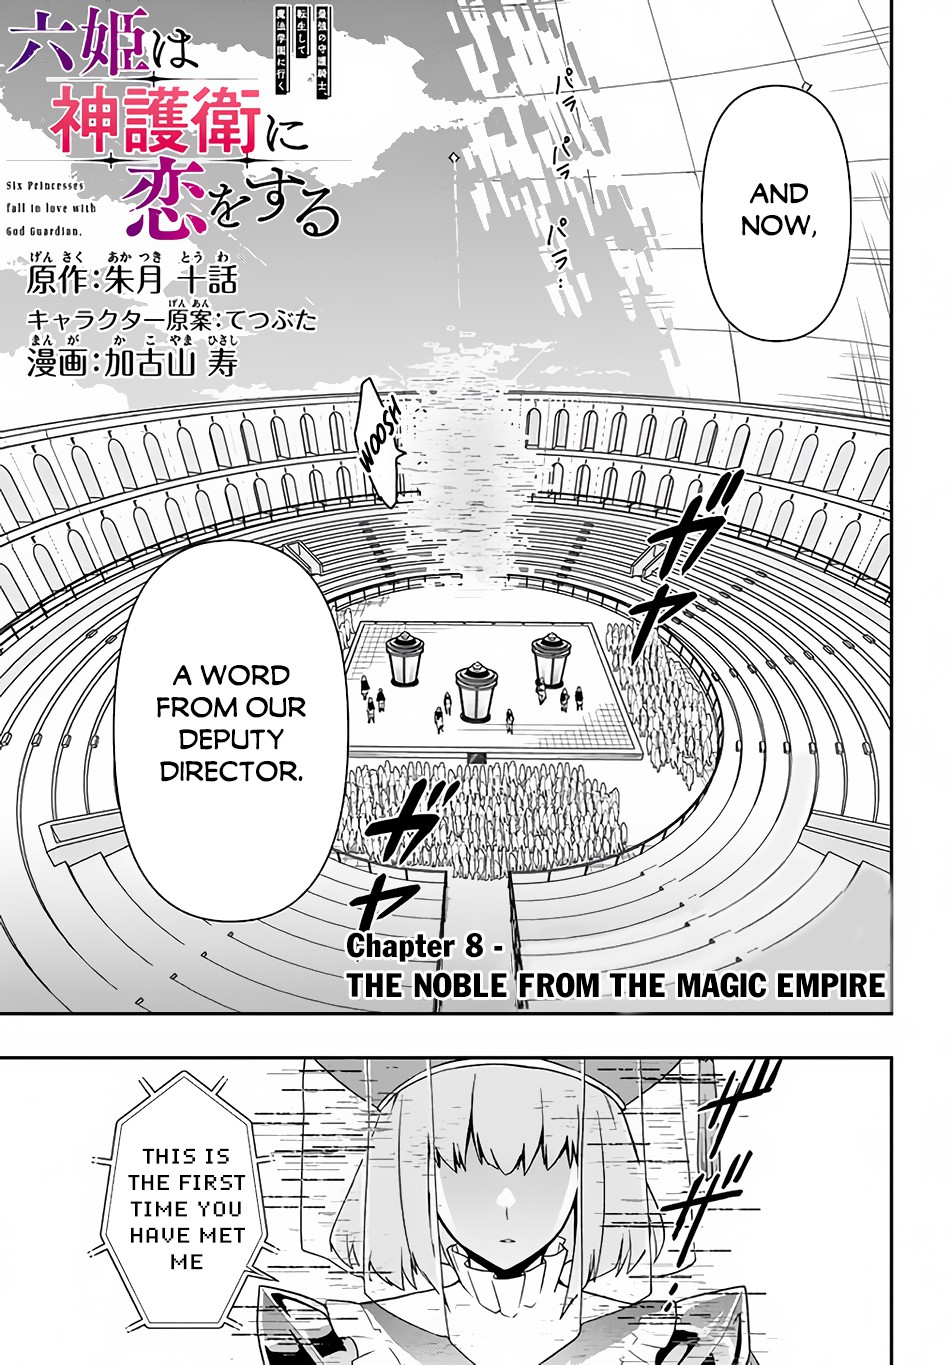 Roku-Hime Wa Kami Goei Ni Koi Wo Suru: Saikyou No Shugo Kishi, Tenseishite Mahou Gakuen Ni Iku Vol.2 Chapter 8: The Noble From The Magic Empire - Picture 2